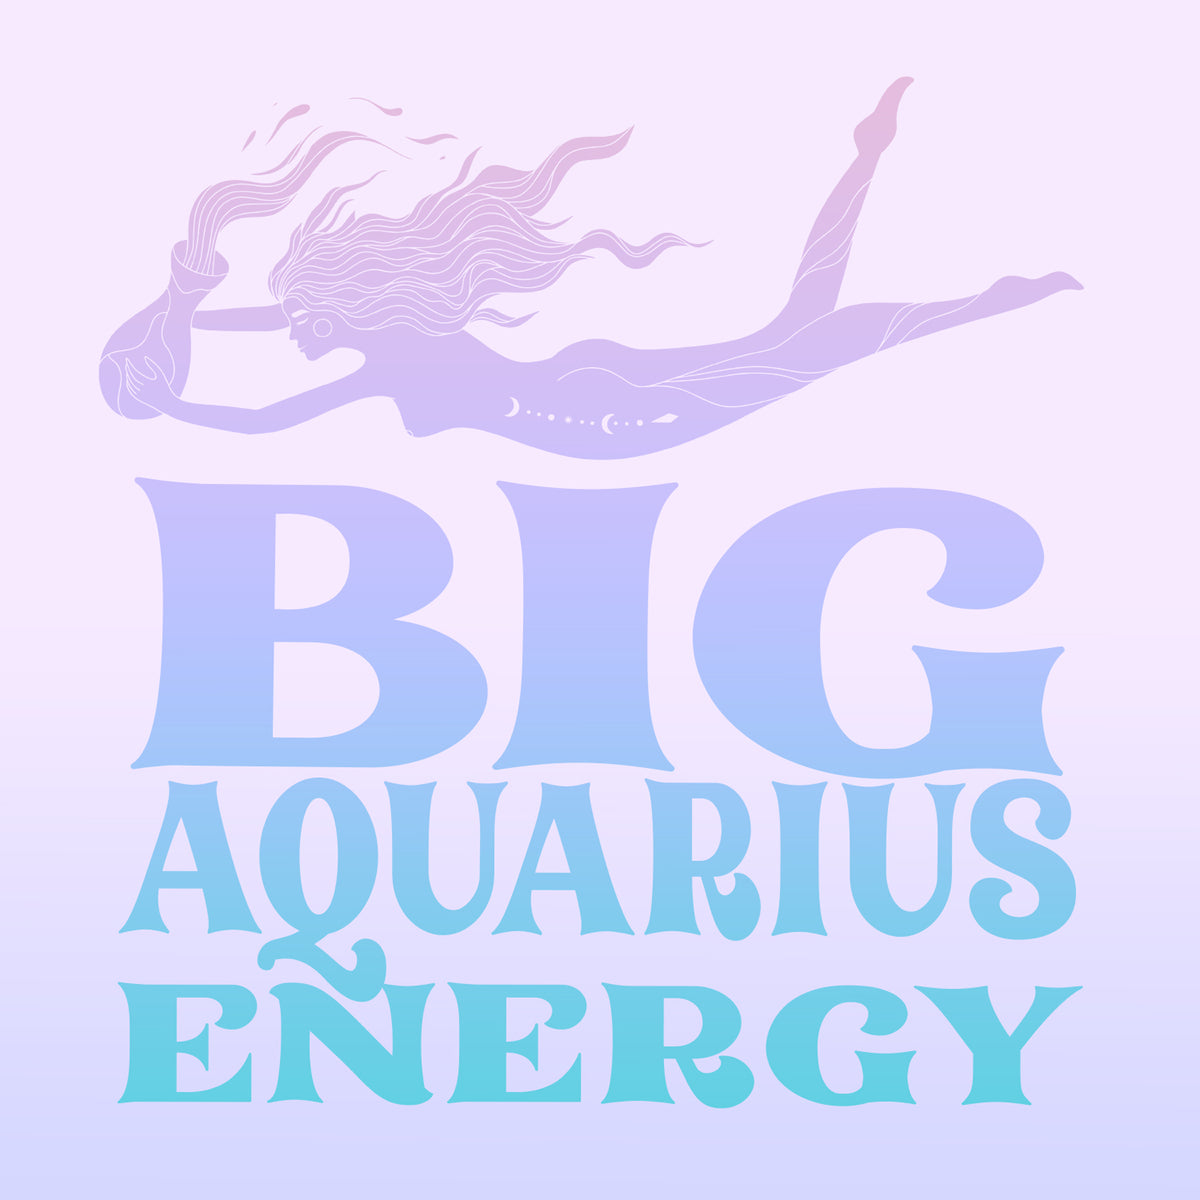 Big Aquarius Energy Zodiac Gift Box Set